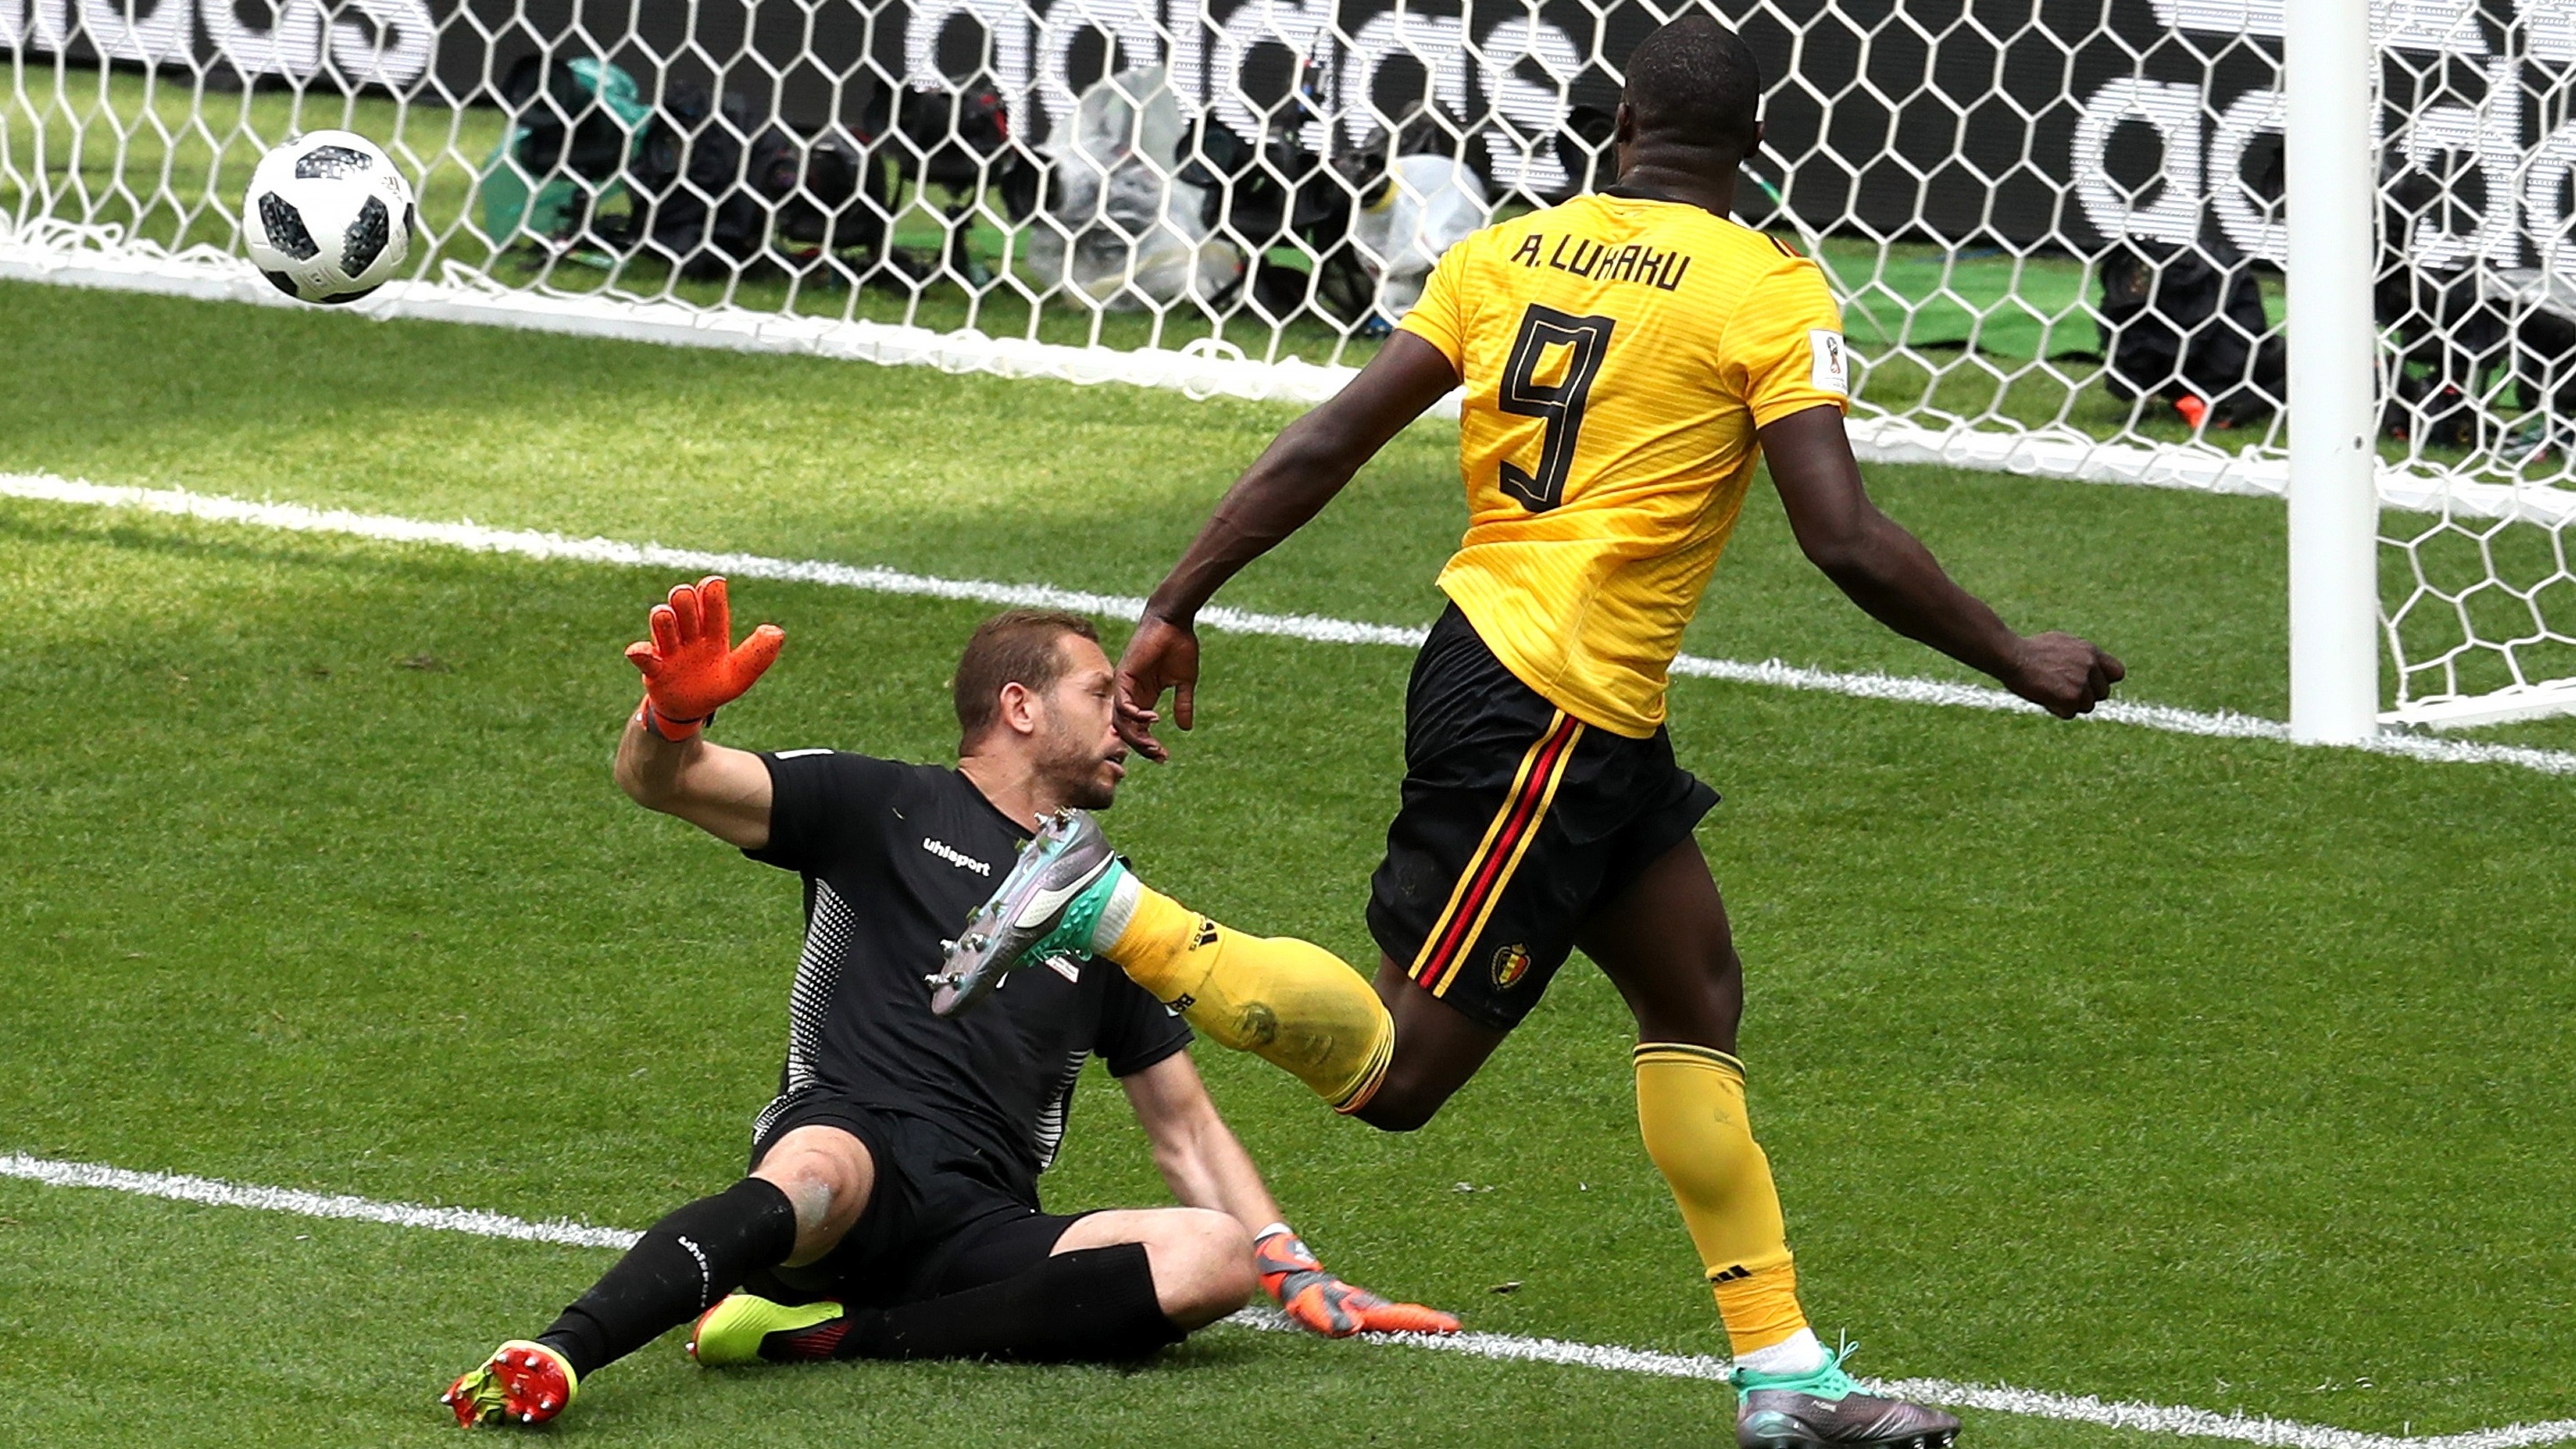 Bélgica na Copa 2018: Artilheiro, Lukaku comemora boa fase, mas será  avaliado após sair com dores - UOL Copa do Mundo 2018